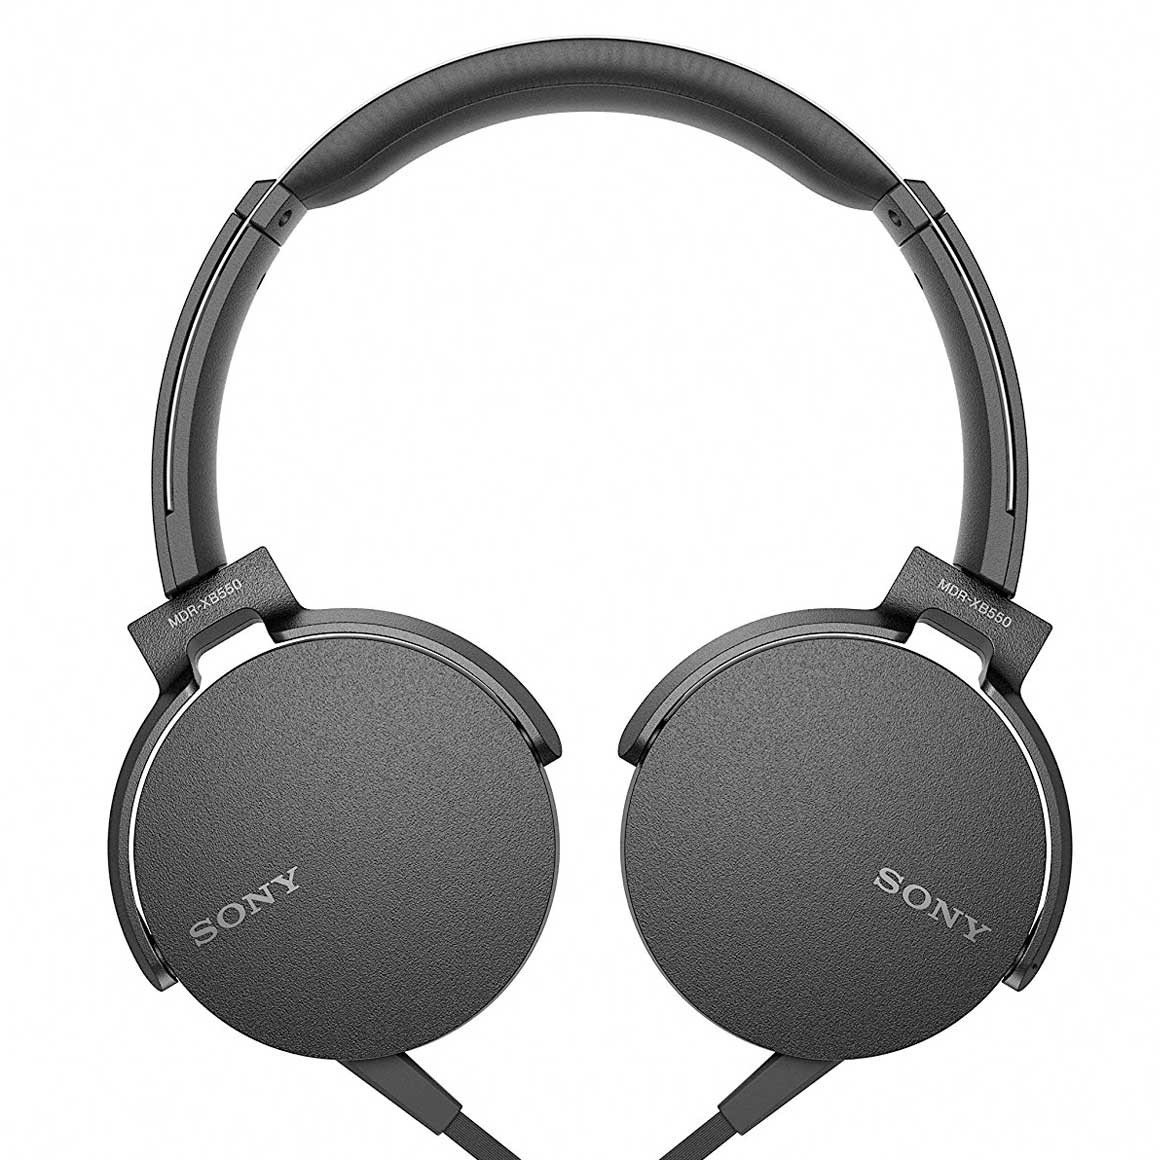 Sony-MDR-XB550AP